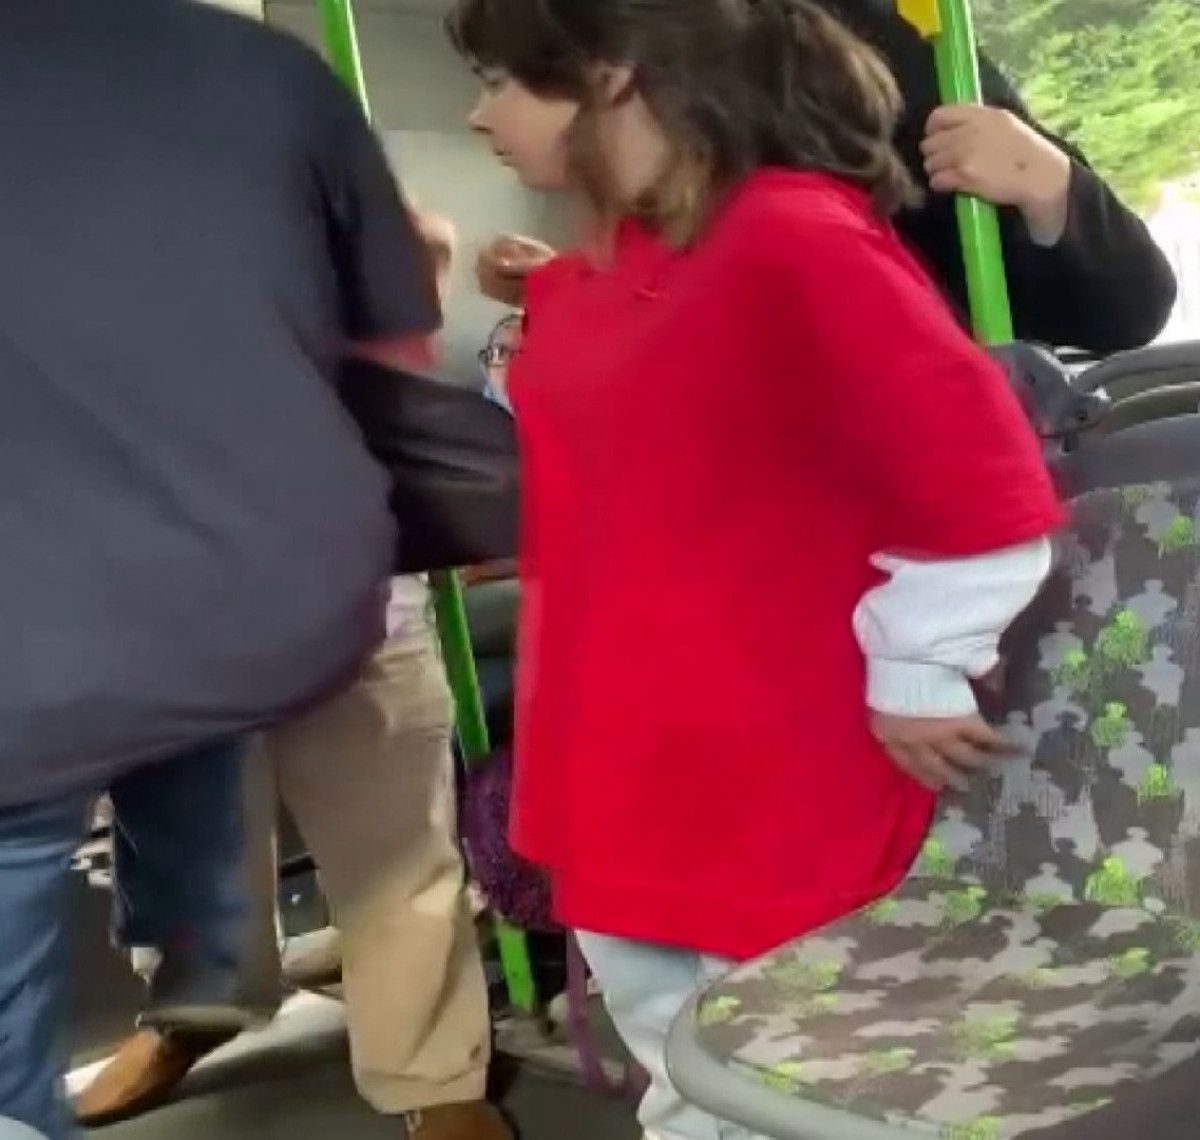 Beylikdüzü nde otobüste kadına hakaret eden şahsa yolculardan müdahale #2